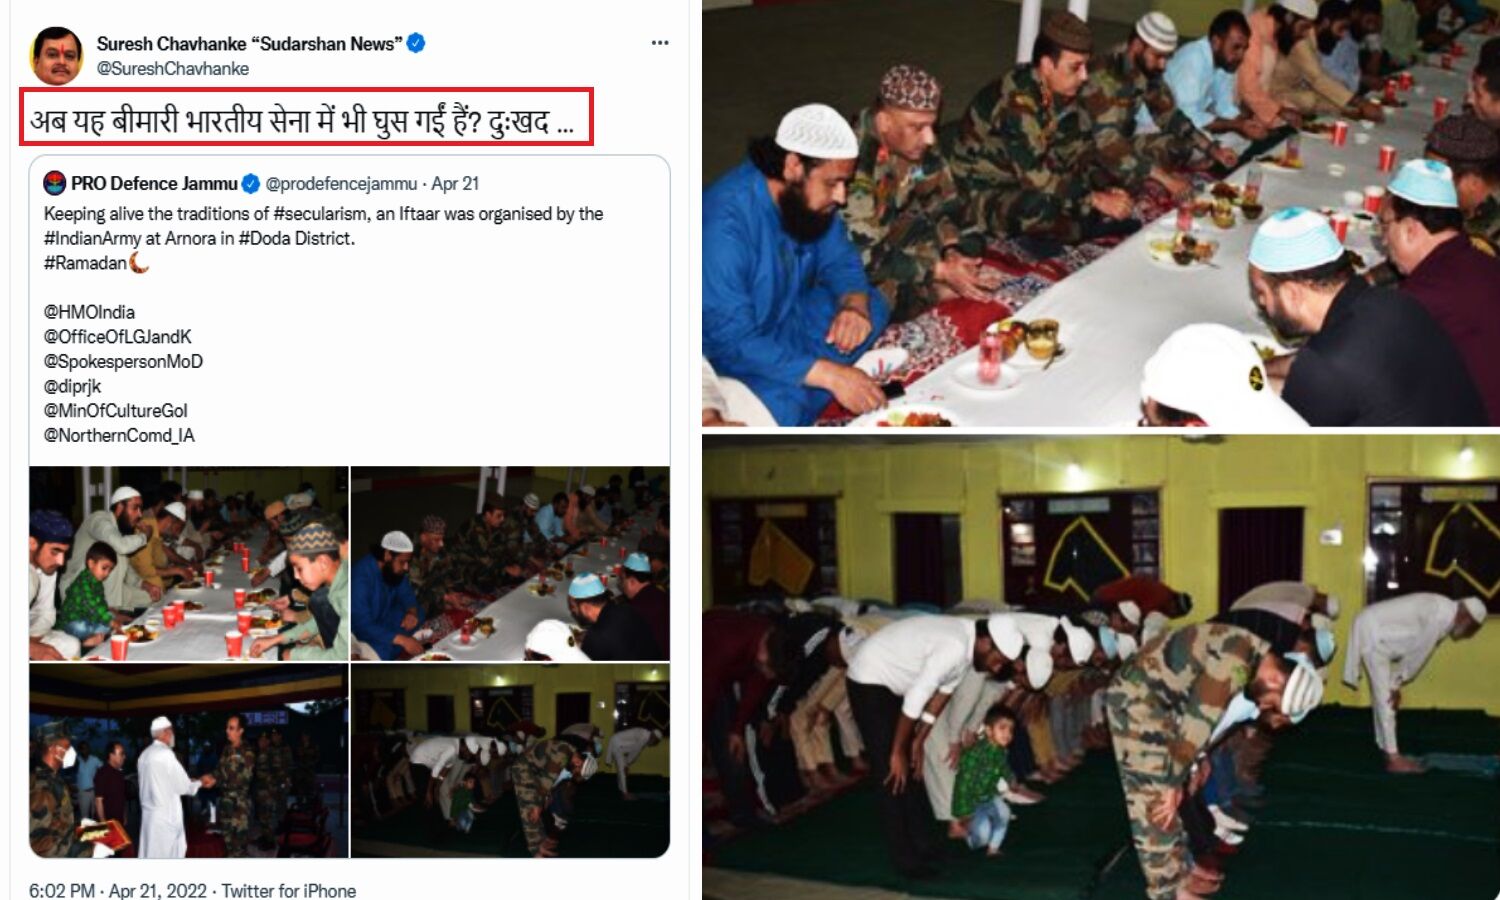 Indian Army Iftar Party : सेना ने इफ्तार पार्टी कर कहा जिंदा रखेंगे धर्मनिरपेक्ष परंपरा, सुरेश च्वहाणके ने बताया बीमारी तो रक्षा PRO ने पोस्ट हटाया